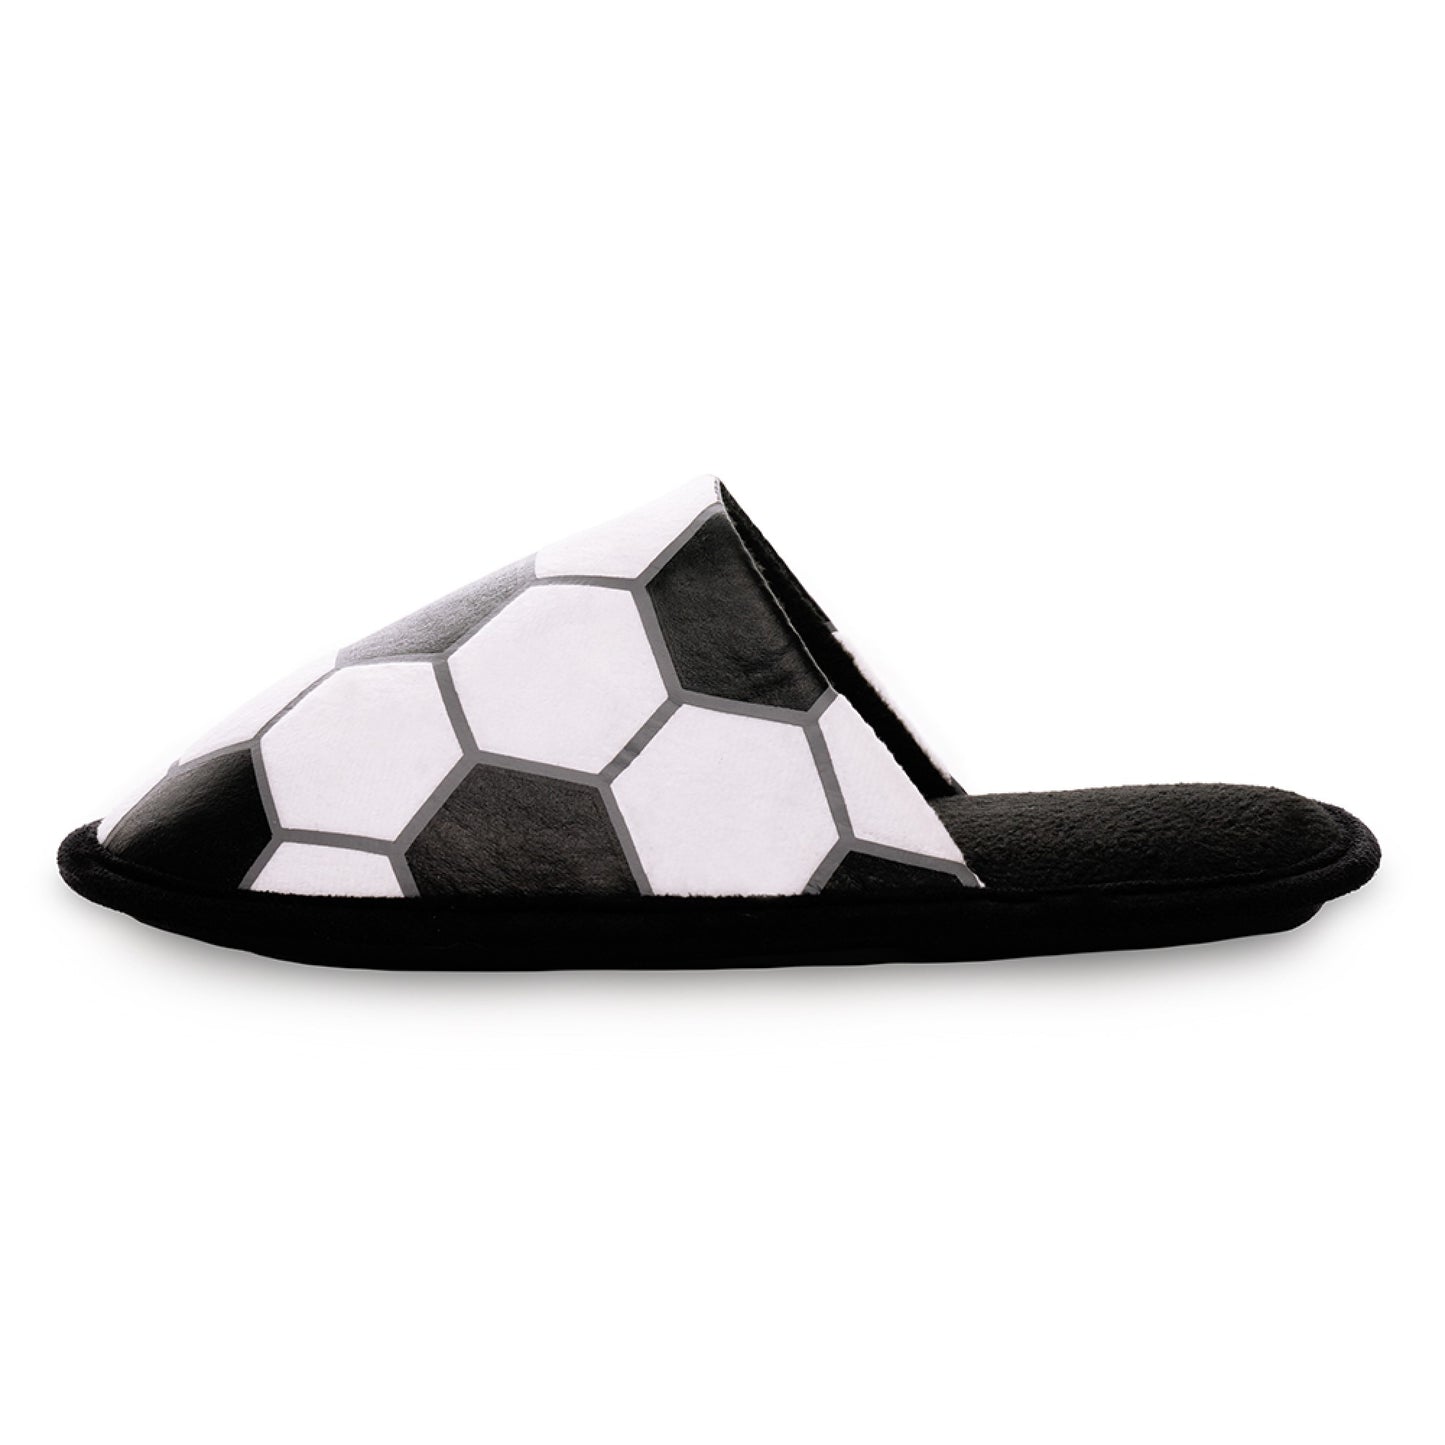 Men's Football Mule Slippers Black and White Soccer Ball Design Slip-On